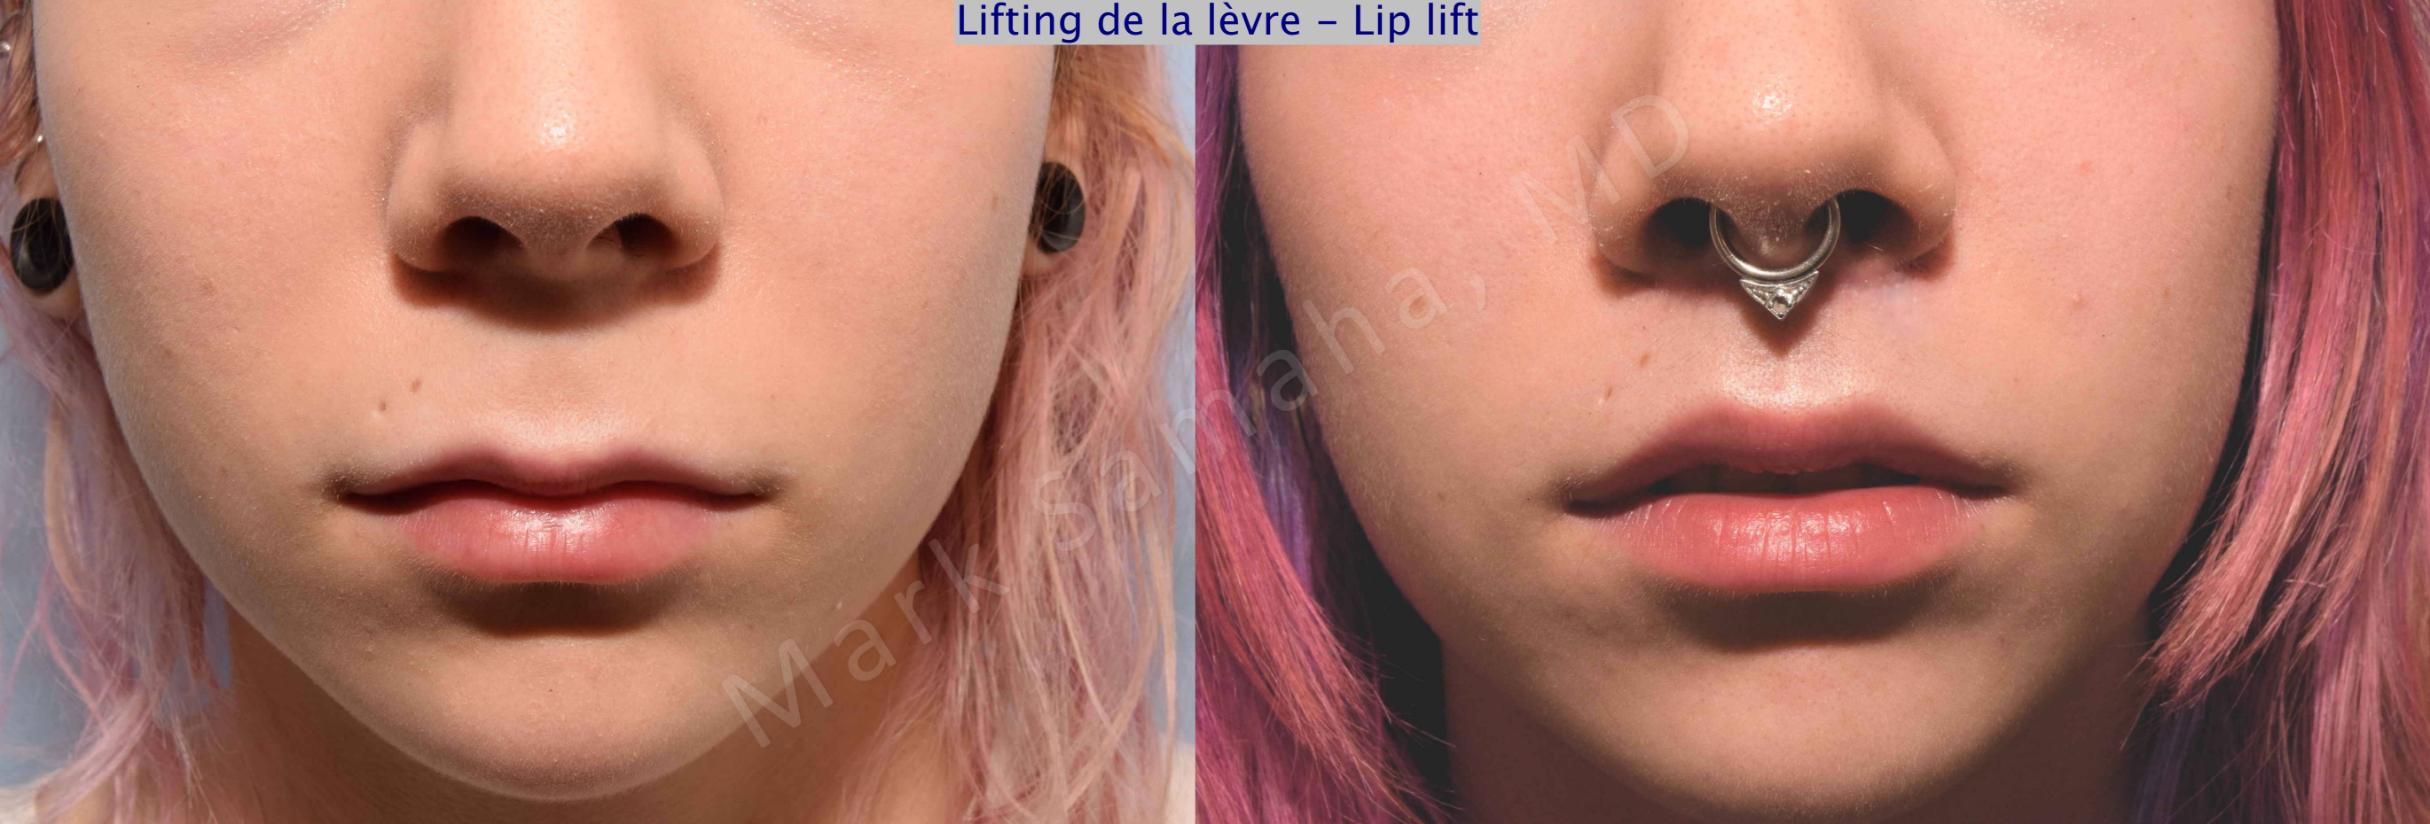 Before & After Lip Lift / Lifting de la lèvre supérieure Case 71 View #1 View in Mount Royal, QC